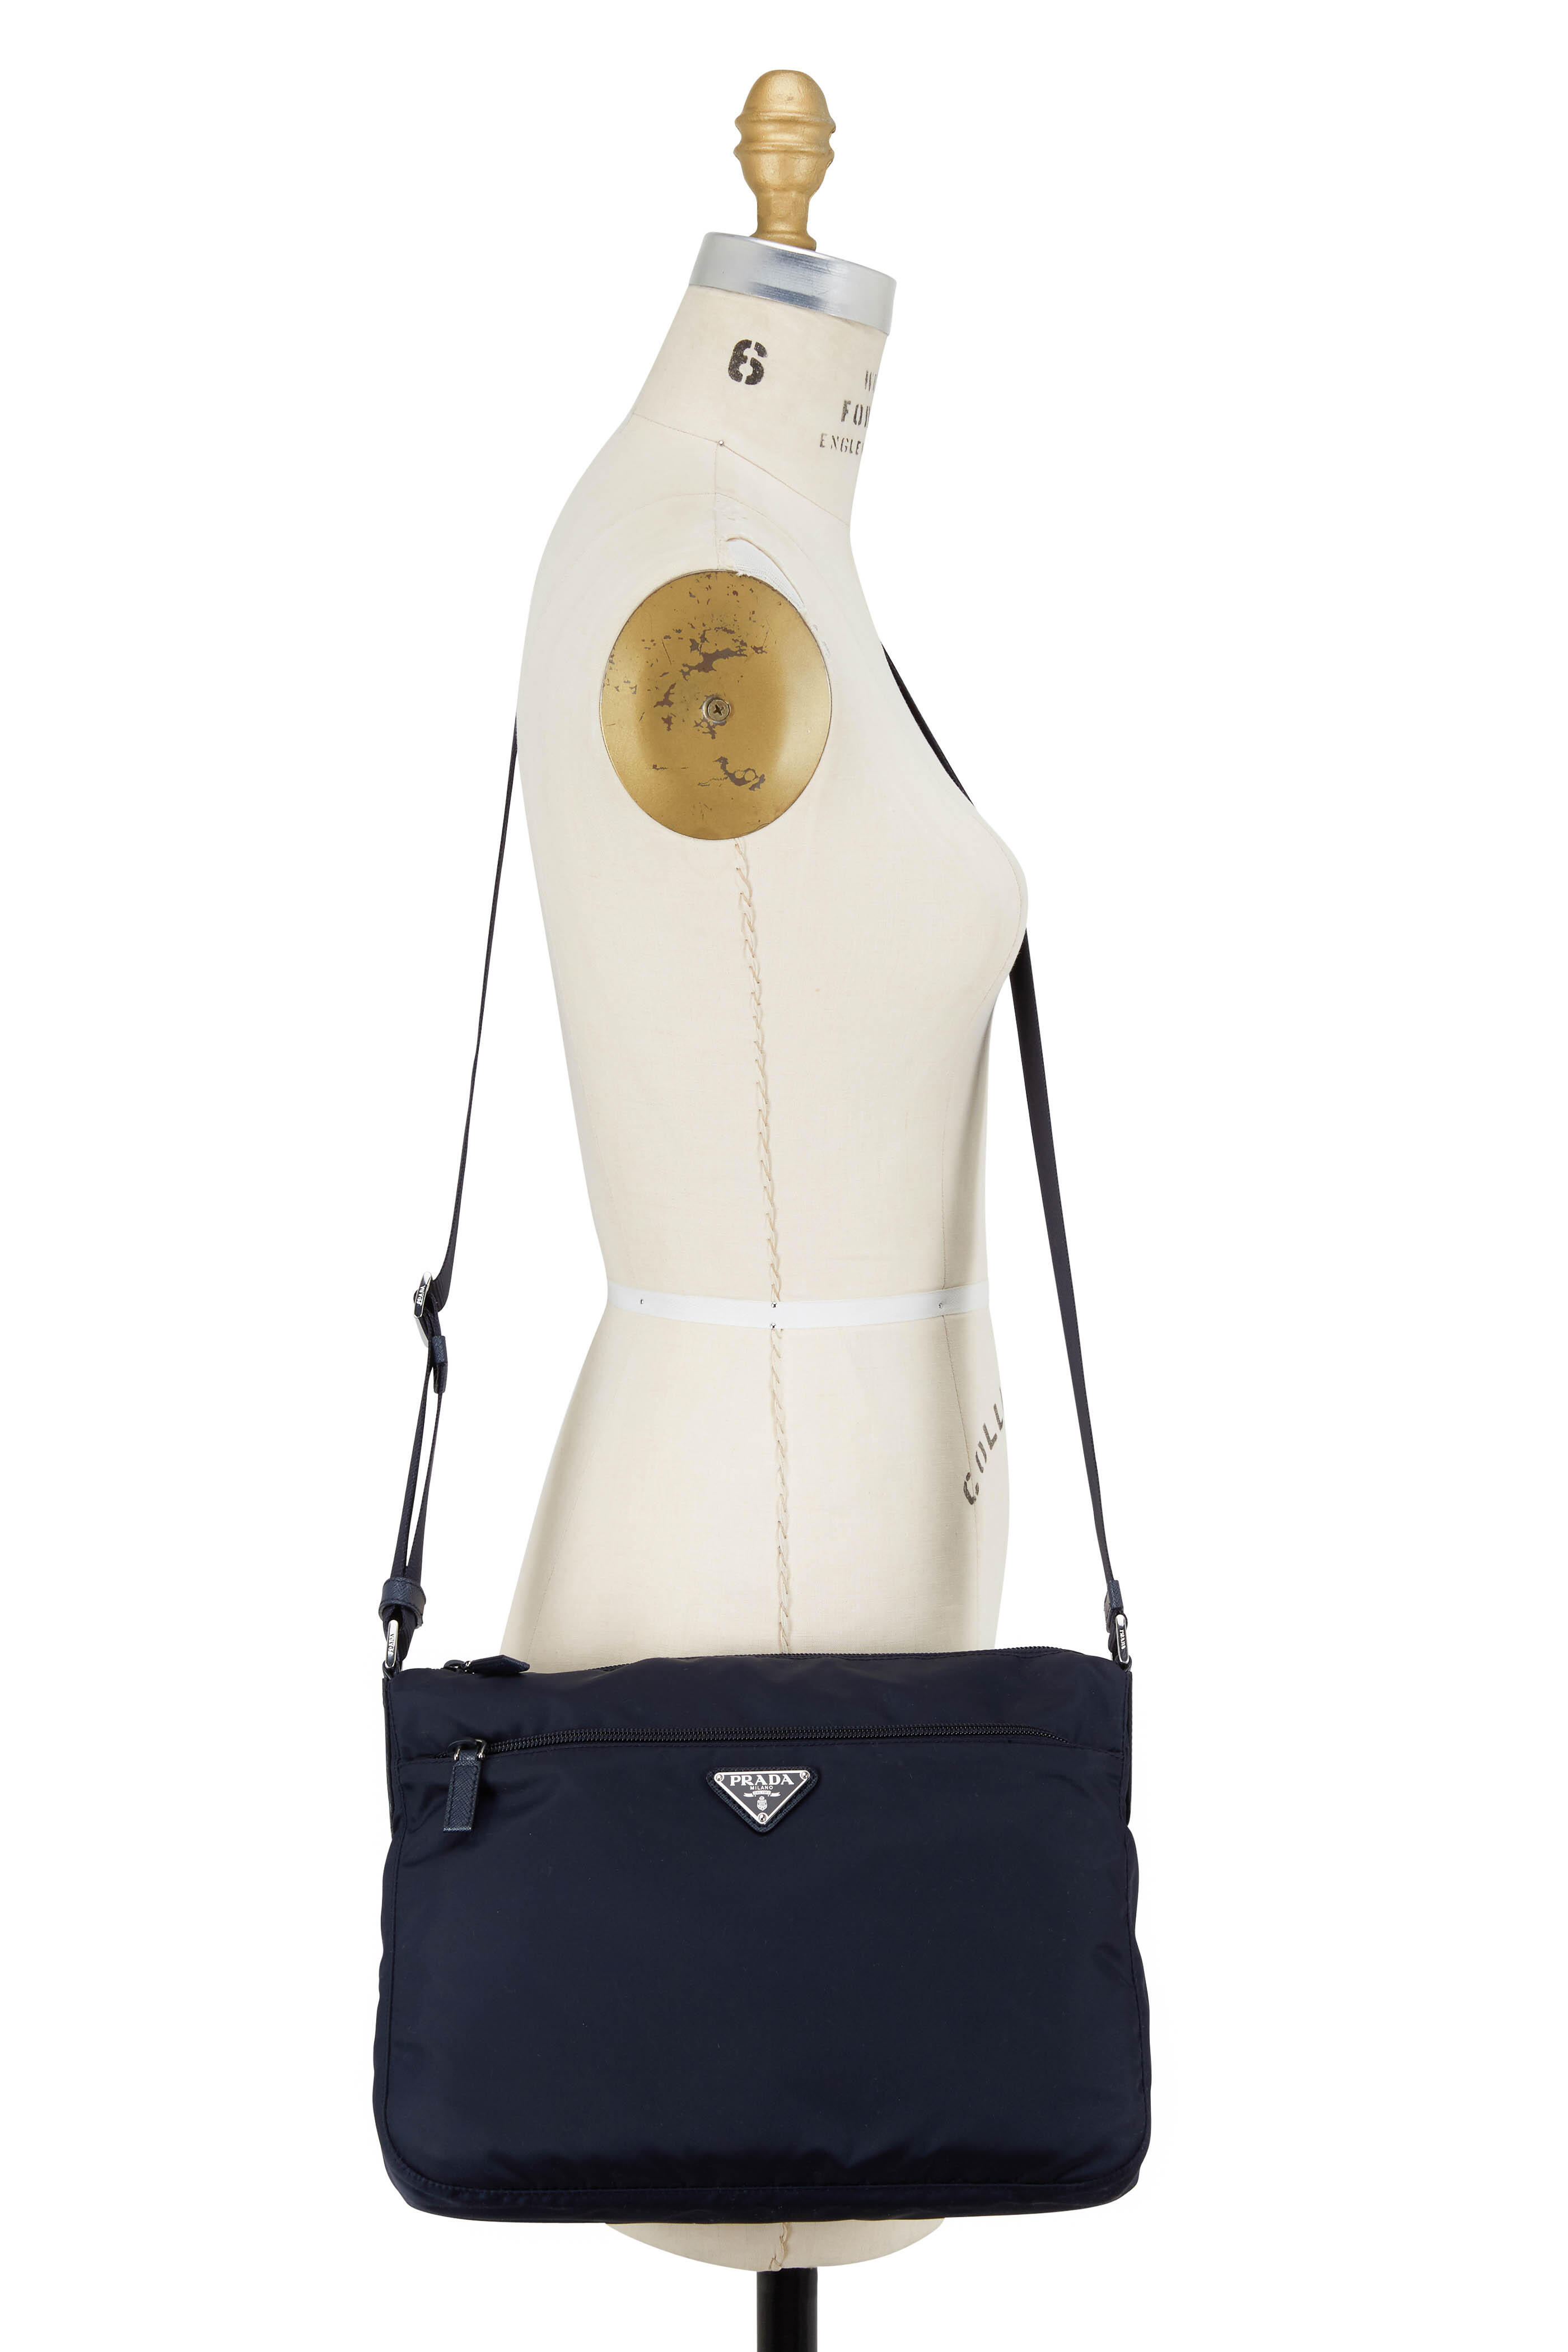 PRADA Men's Messenger/Shoulder Bags for sale